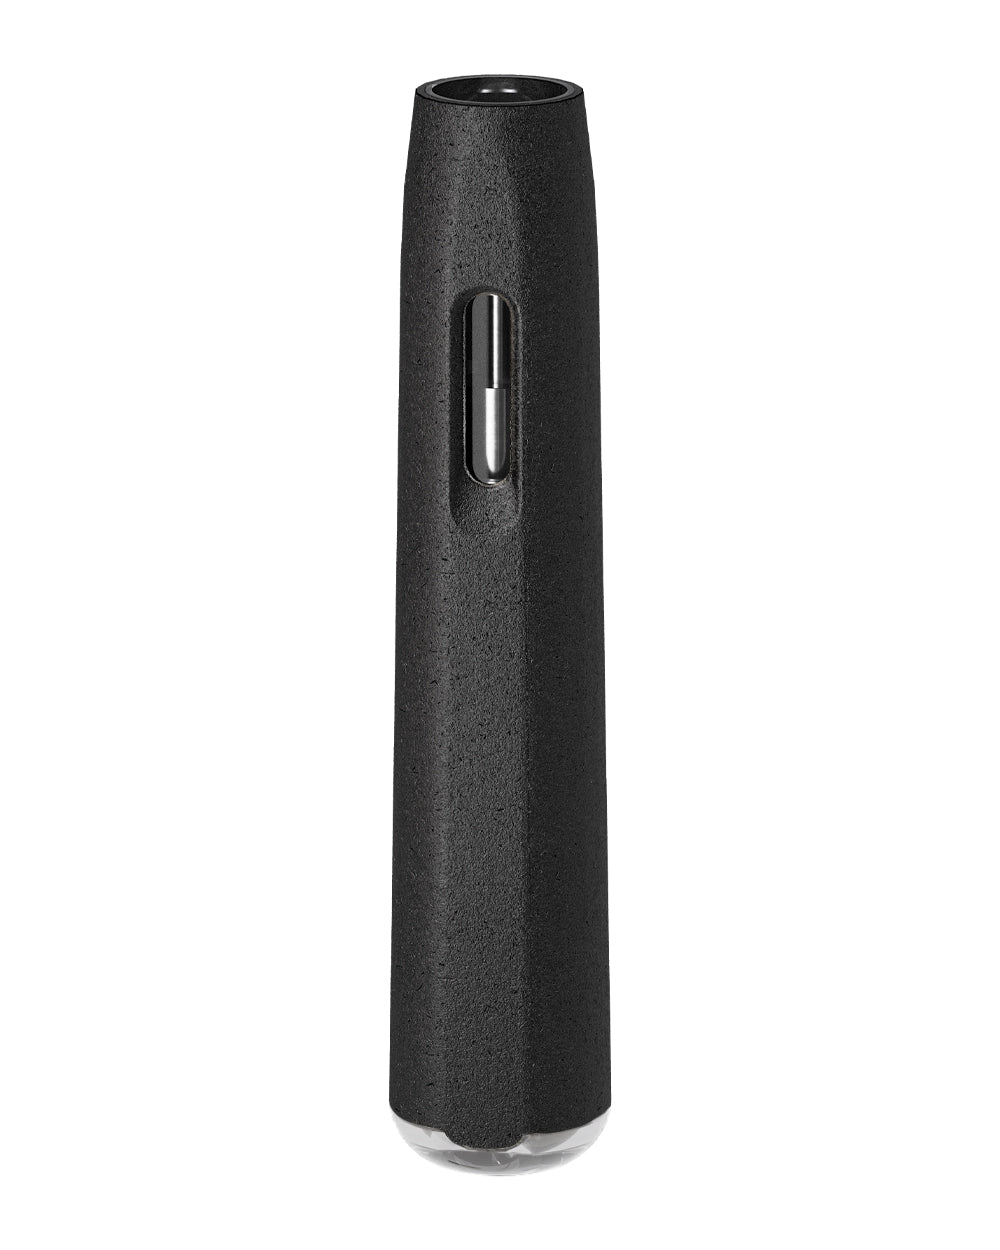 AVD | Stem Black Hemp Plastic Blend Rechargeable Disposable Vape Pen w/ Clear Vortex Mouthpiece | 1mL - 220 mAh  - 2